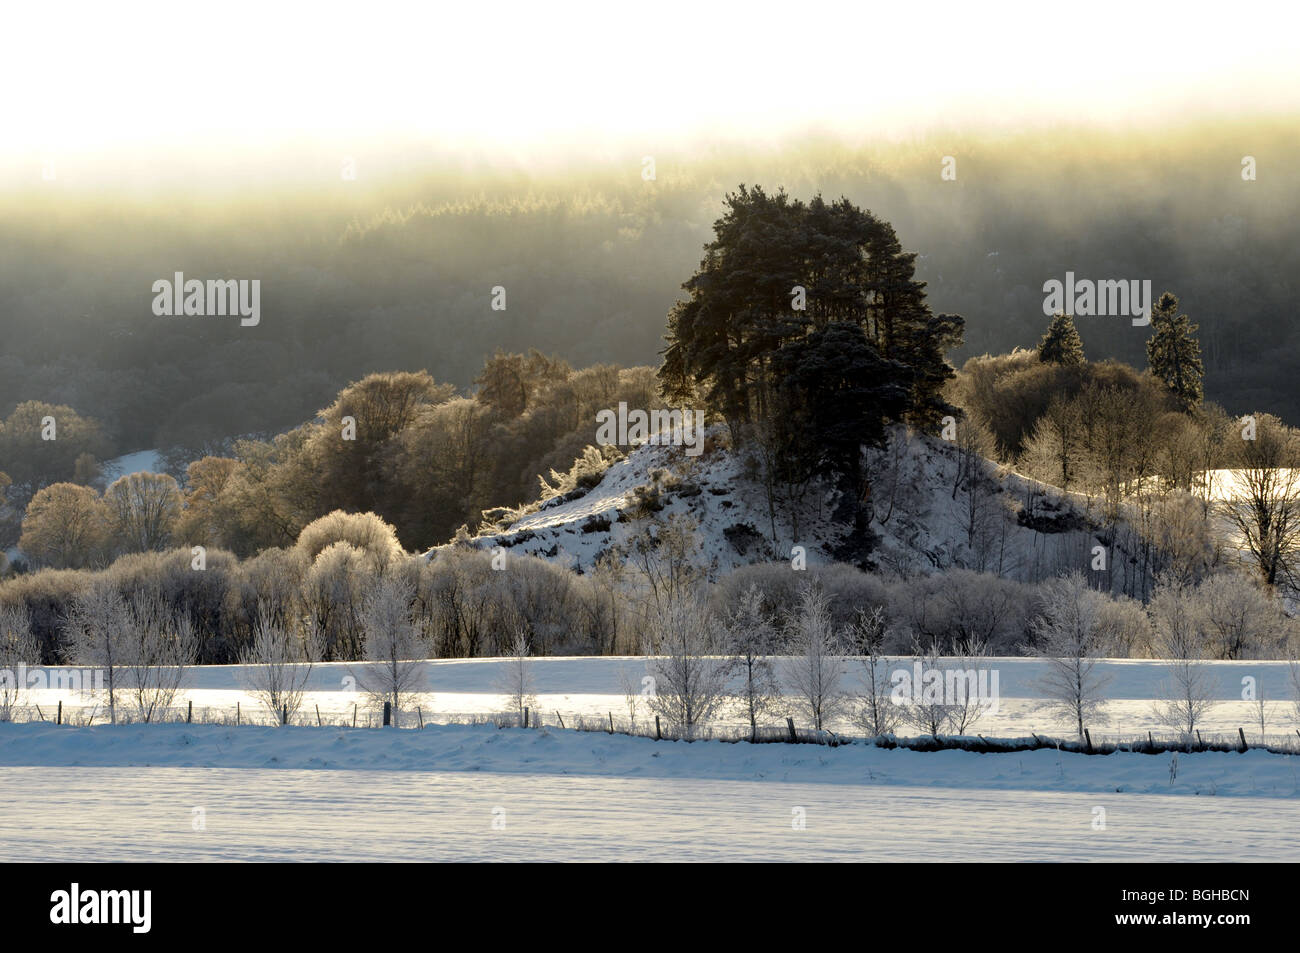 A snowy landscape scene in Perthshire, Scotland Stock Photo